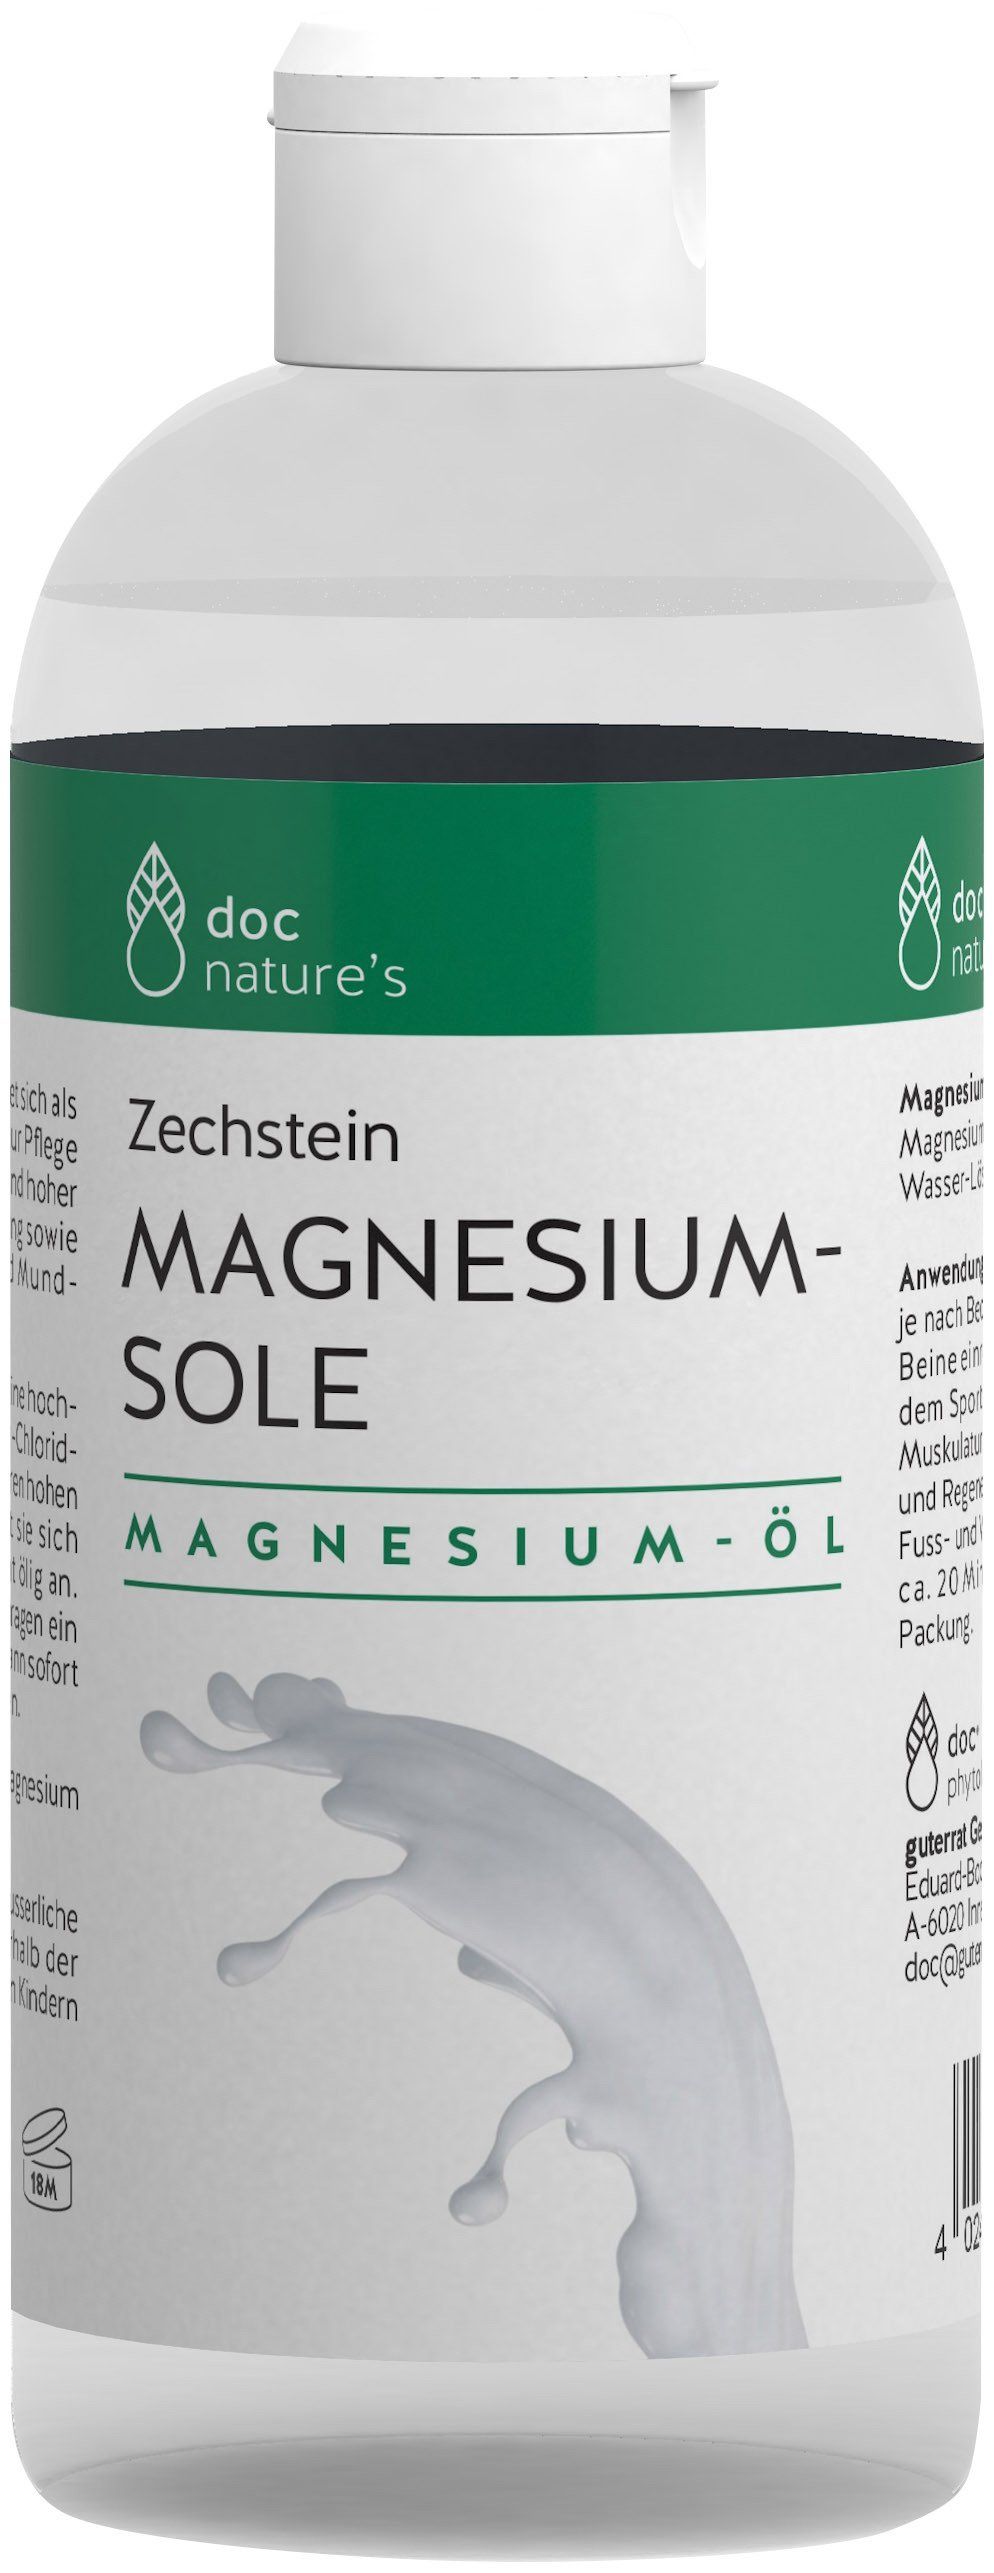 doc nature's Zechstein MAGNESIUM-SOLE MAGNESIUM-ÖL